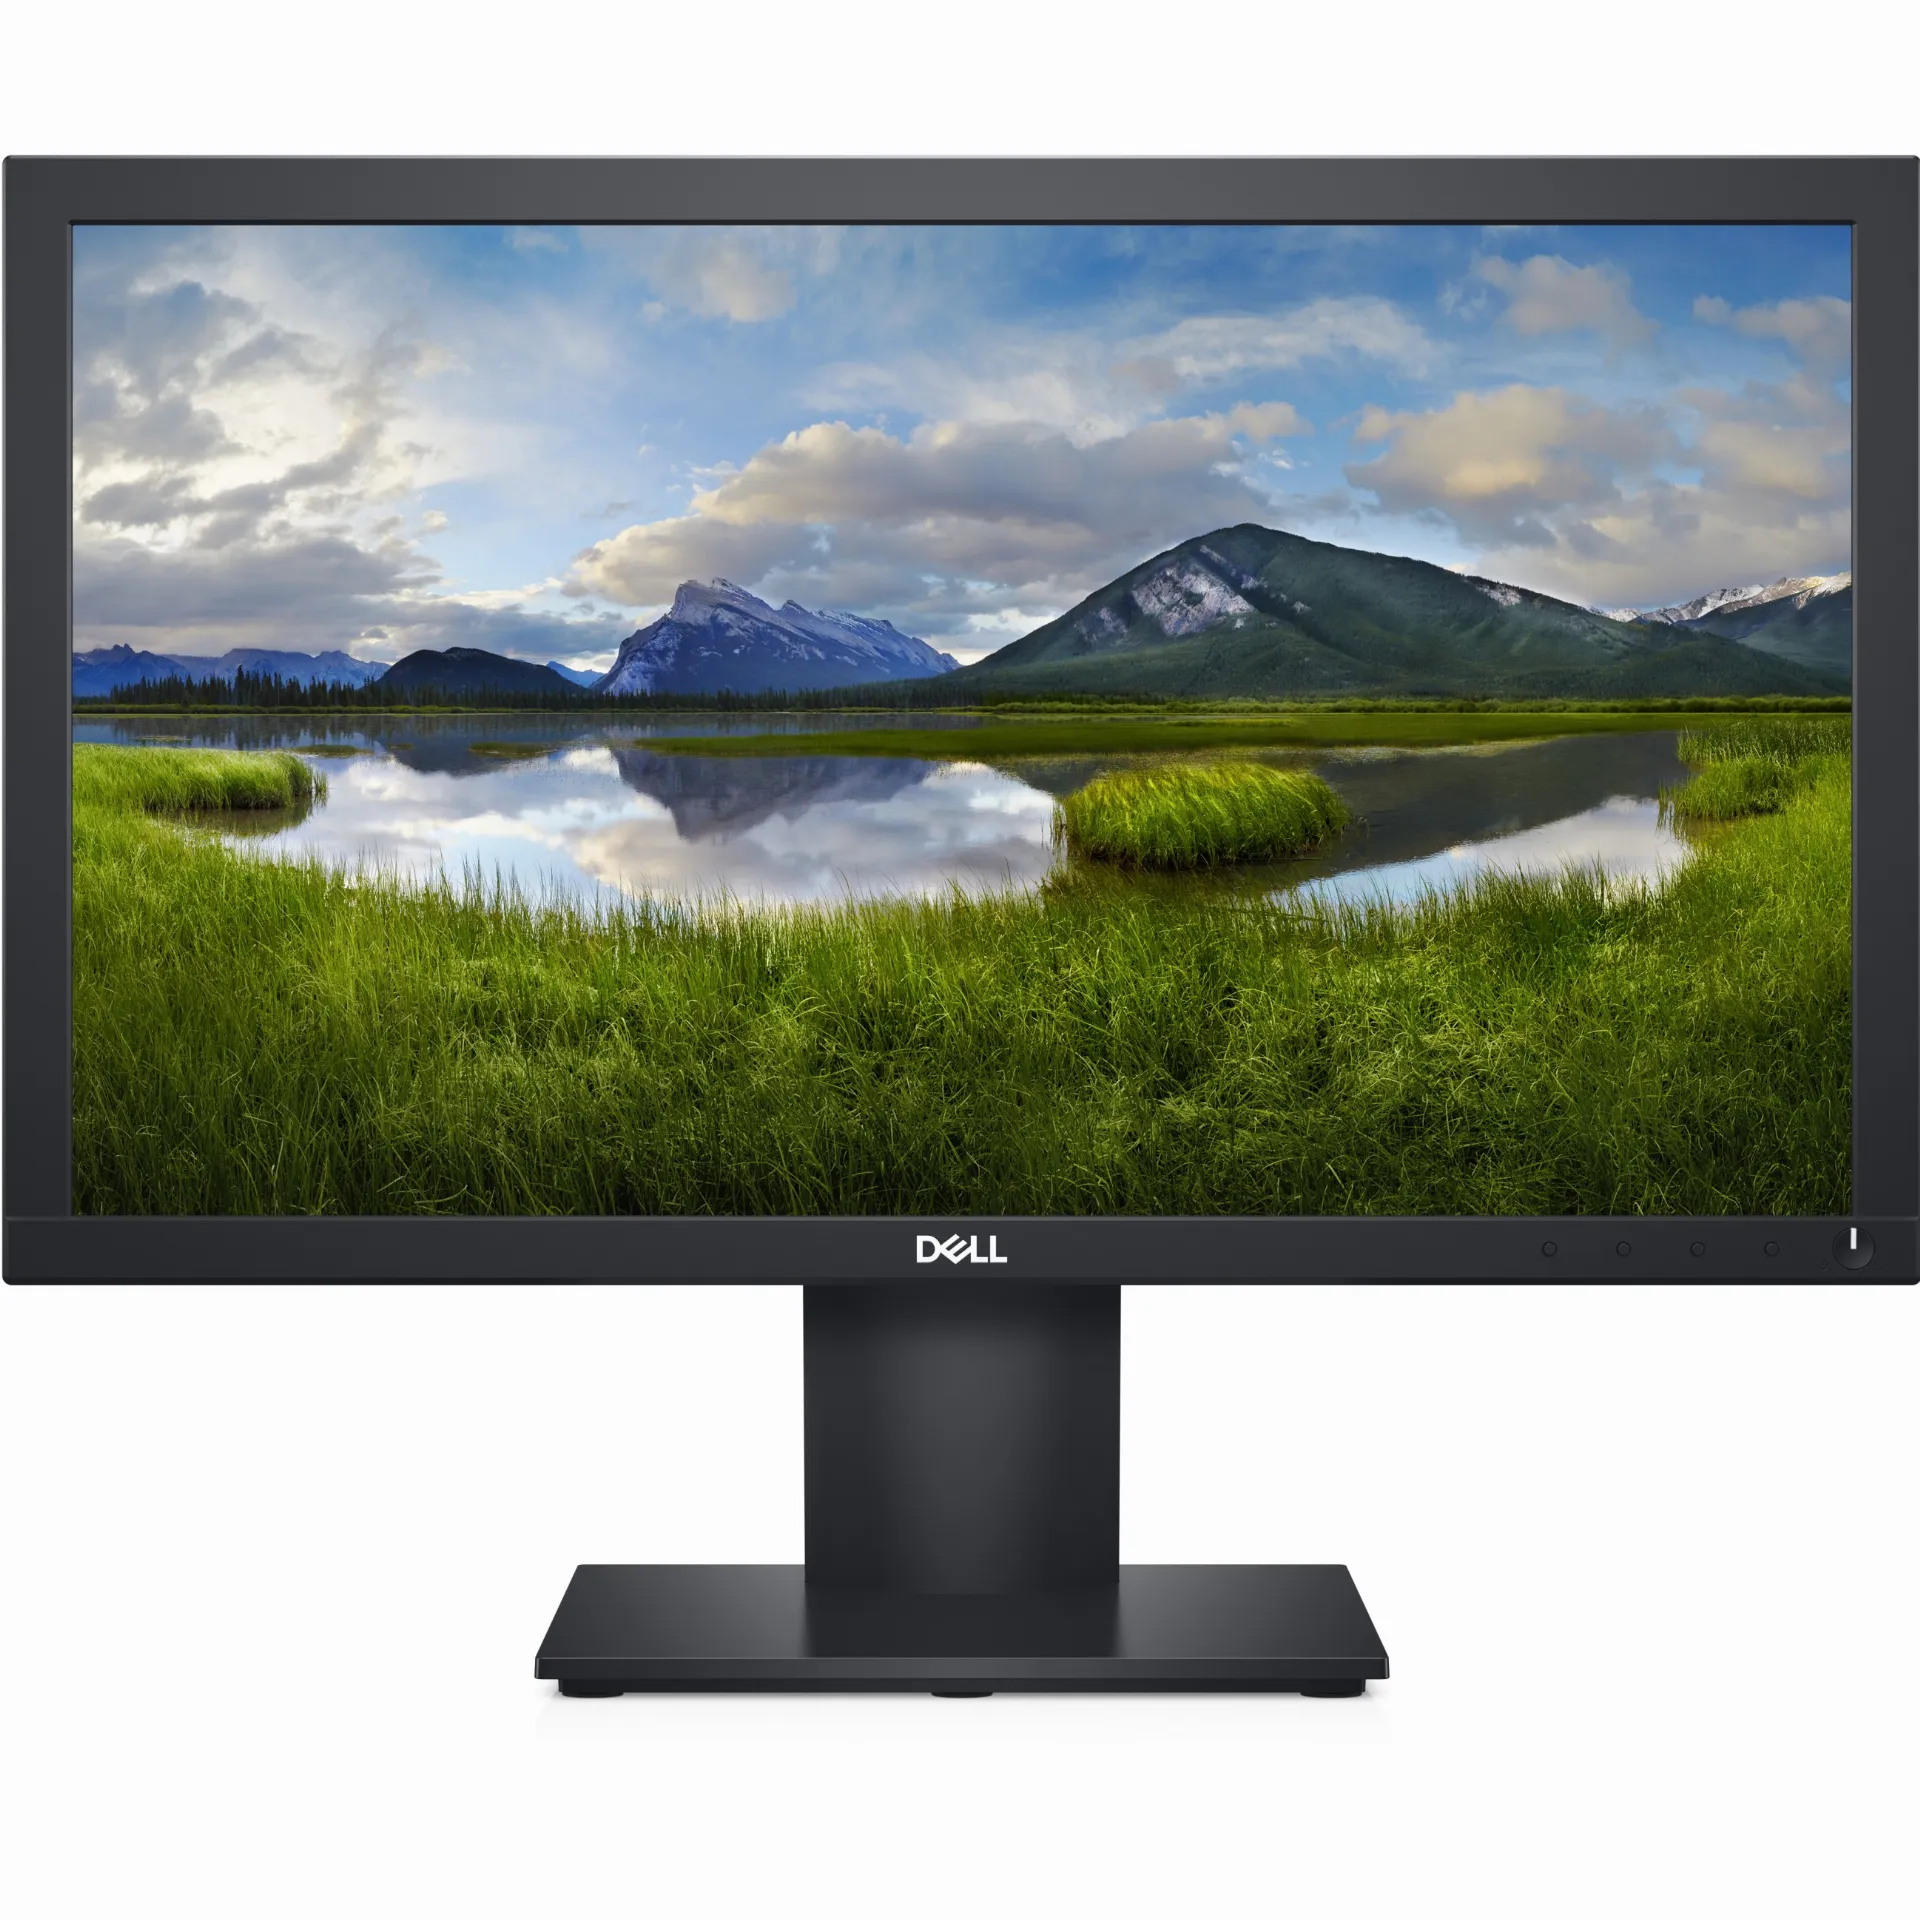 DELL E Series E2020H, 50,8 cm (20 Zoll), 1600 x 900 Pixel, HD+, LCD, 5 ms, Schwarz